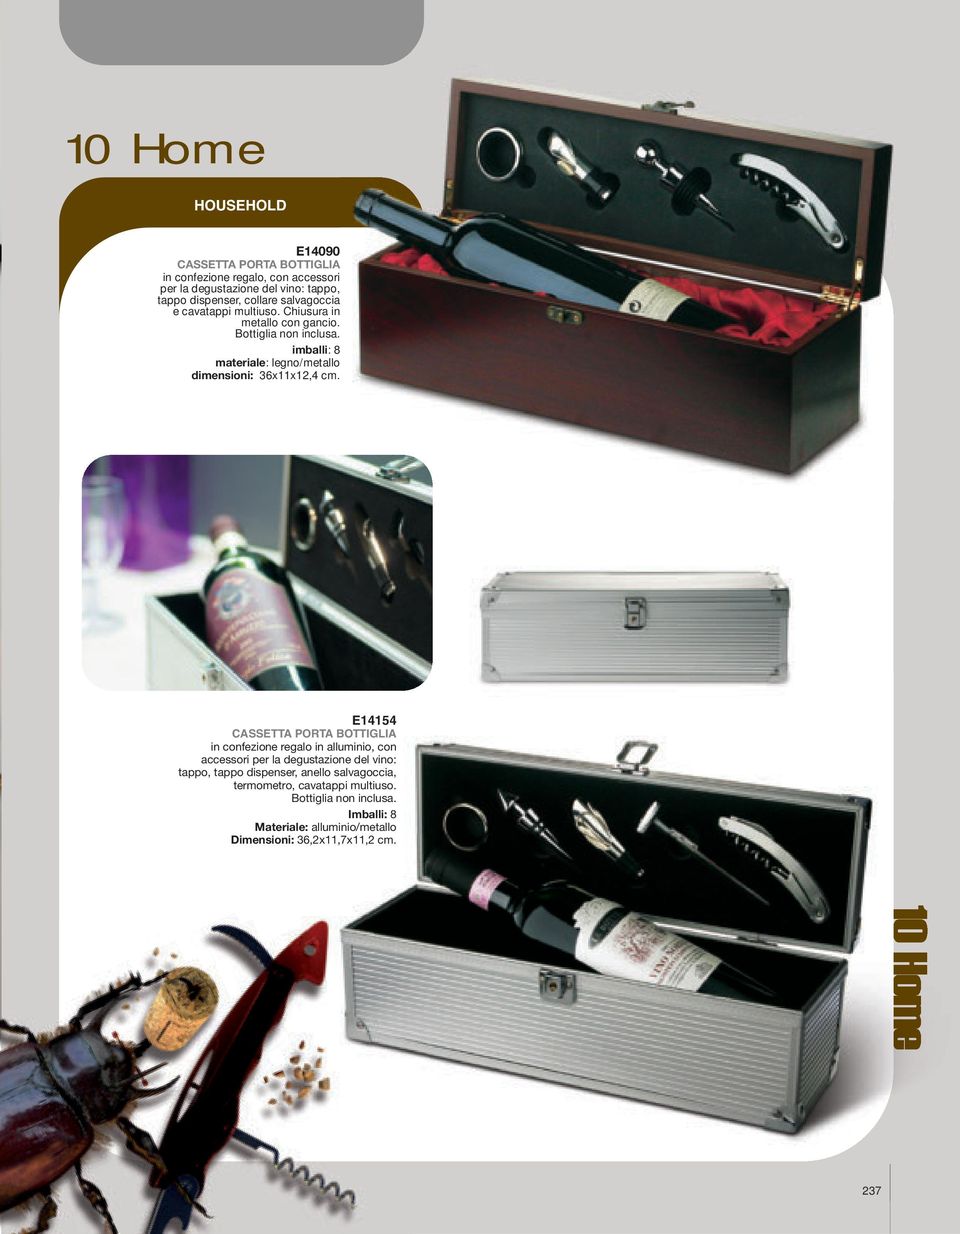 E14154 CASSETTA PORTA BOTTIGLIA in confezione regalo in alluminio, con accessori per la degustazione del vino: tappo, tappo dispenser, anello